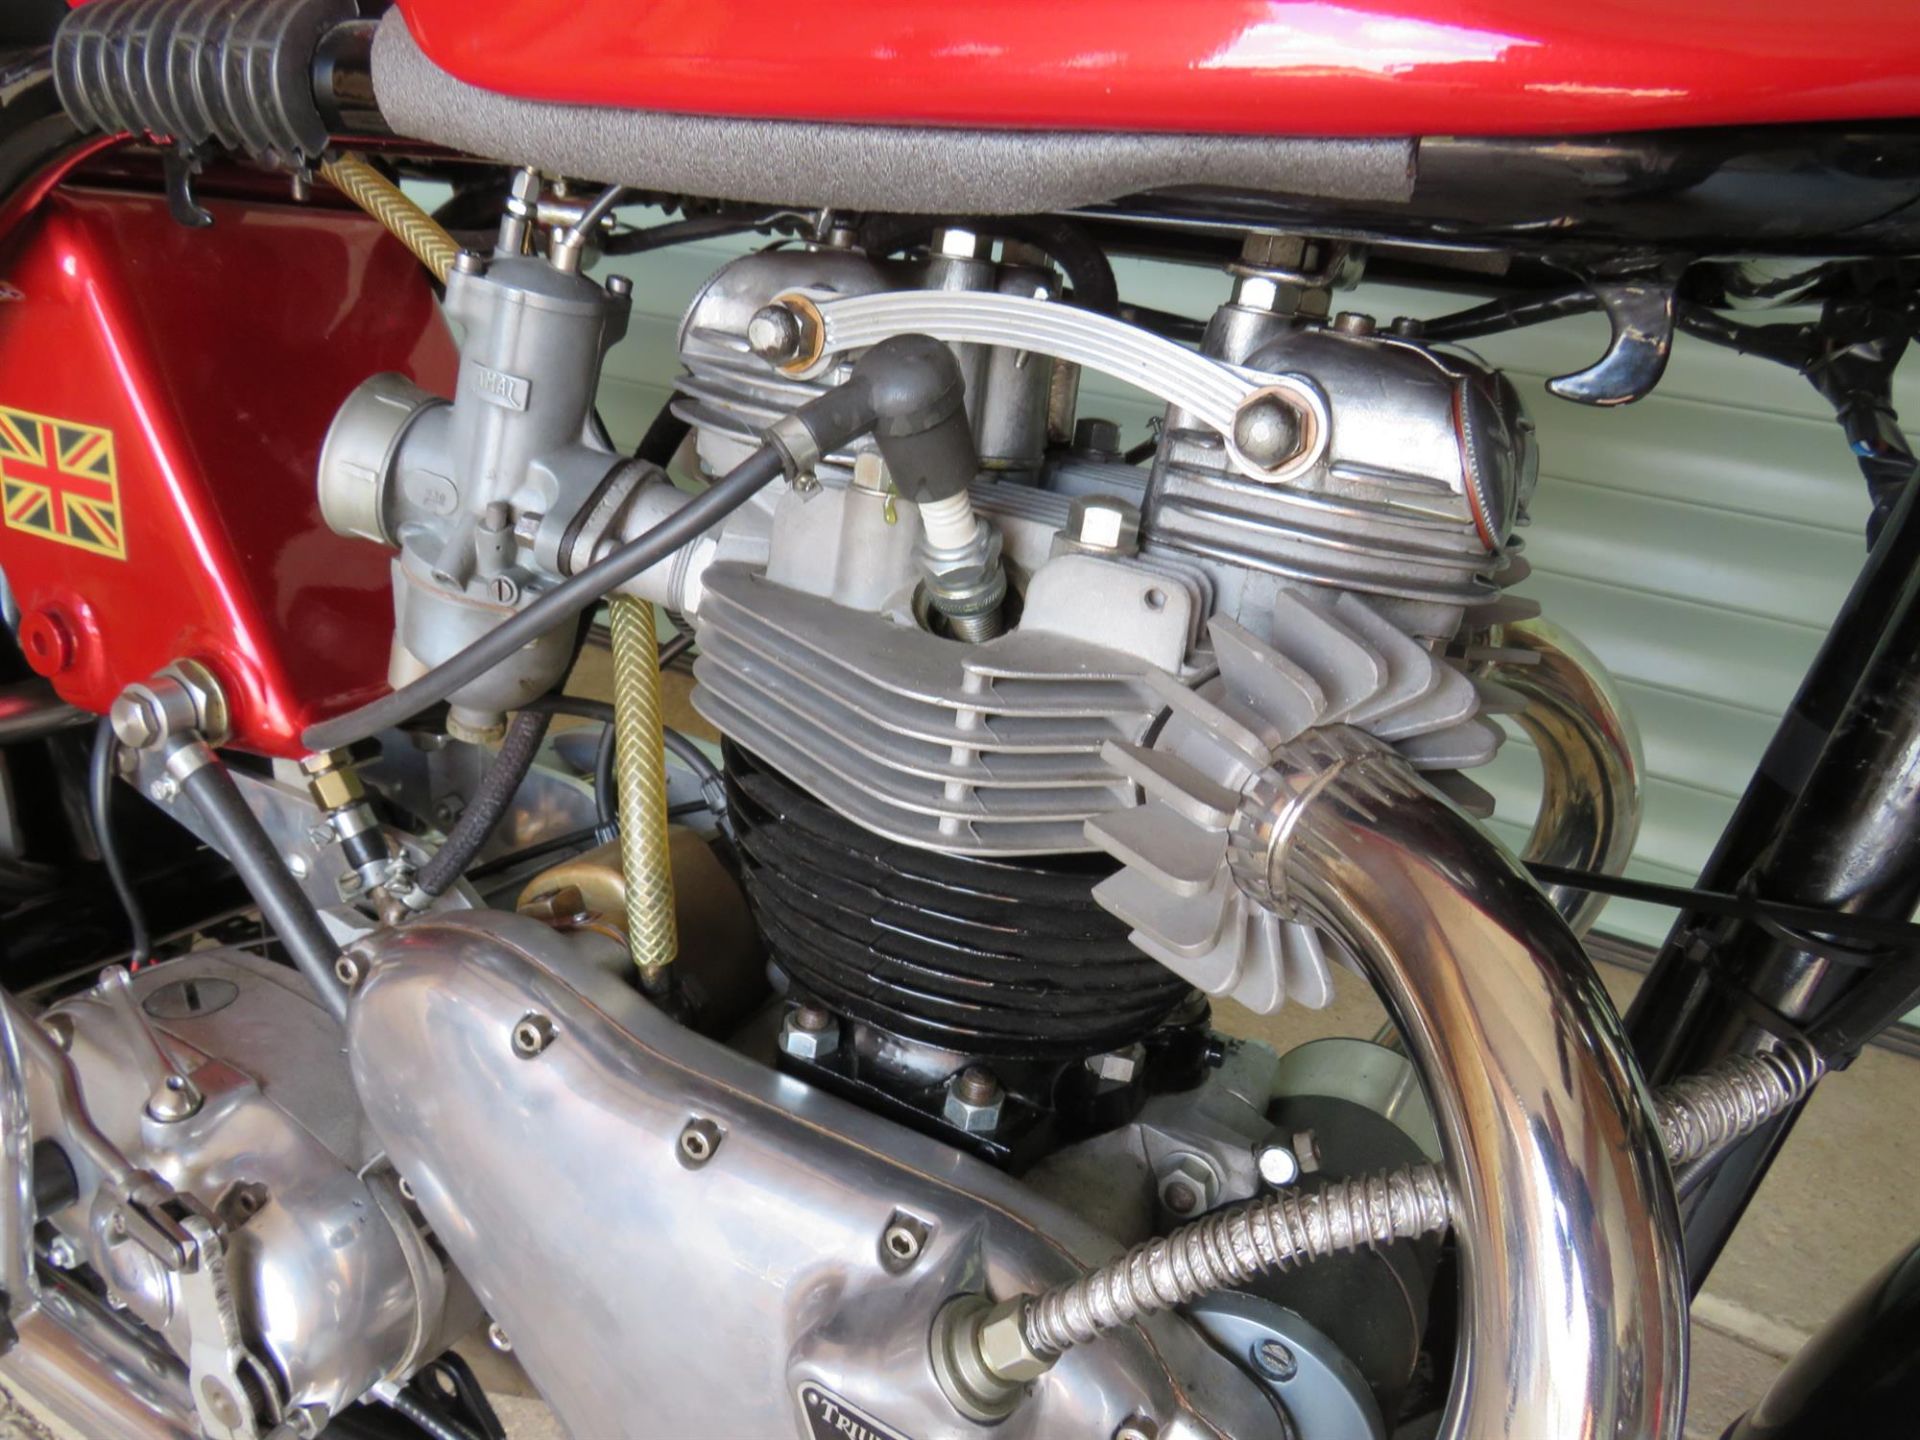 1964 Norton Triton Café Racer 650cc - Image 7 of 10